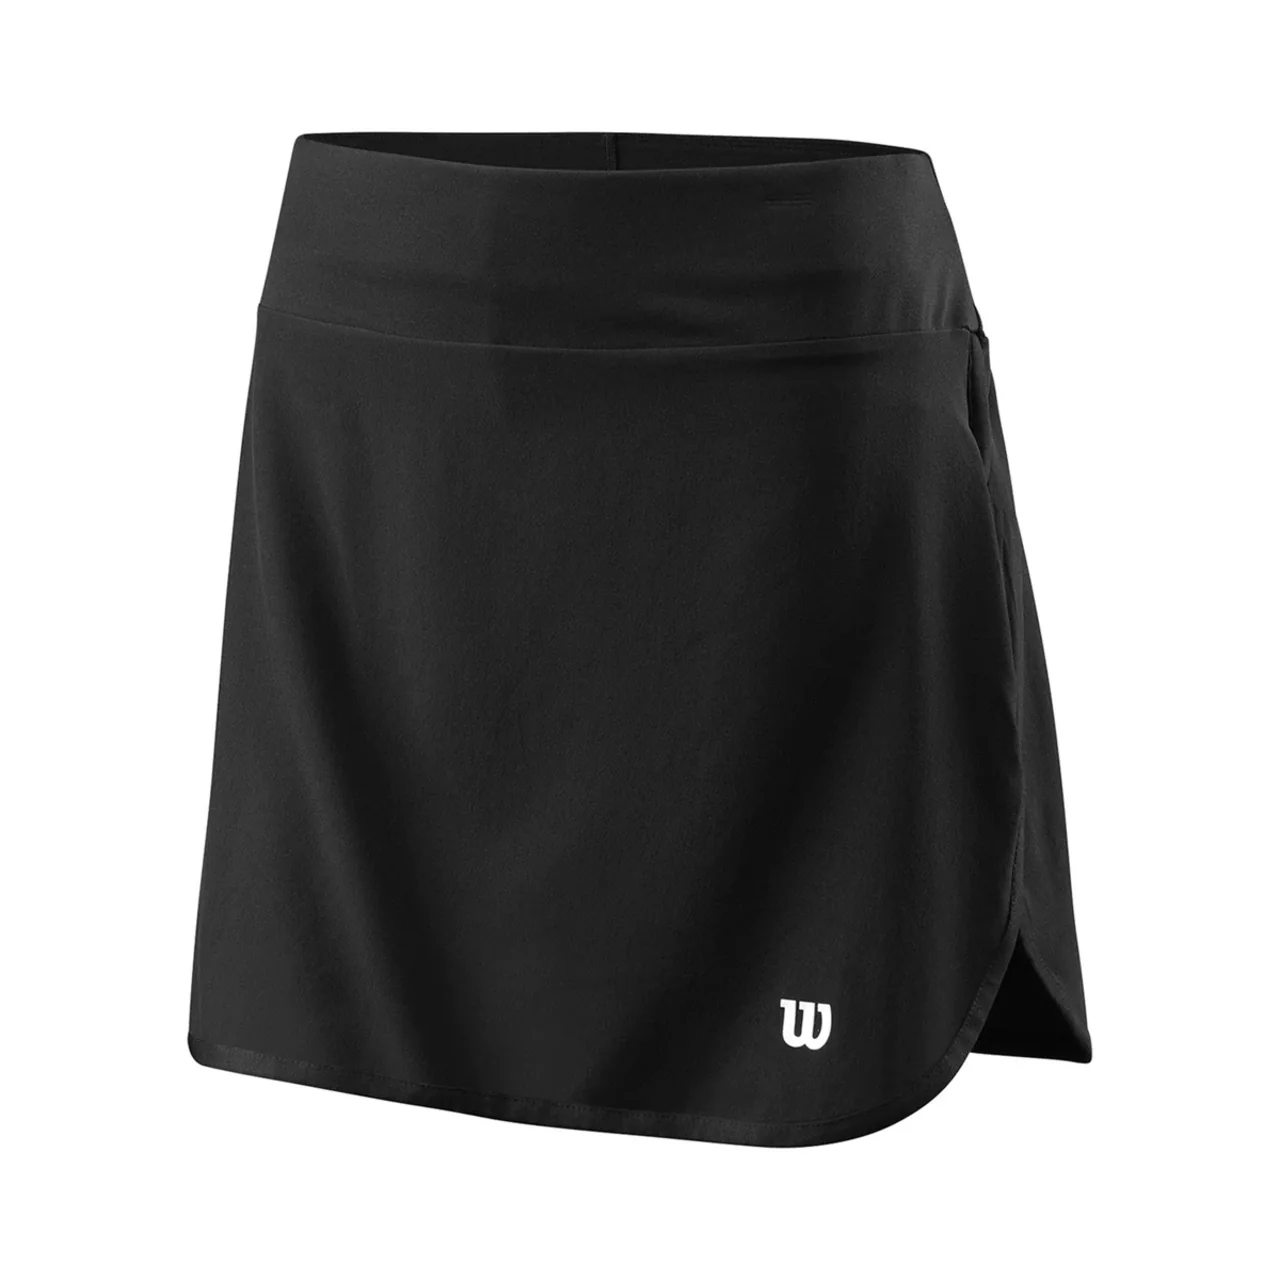 Wilson Training 14.5 Skirt Black